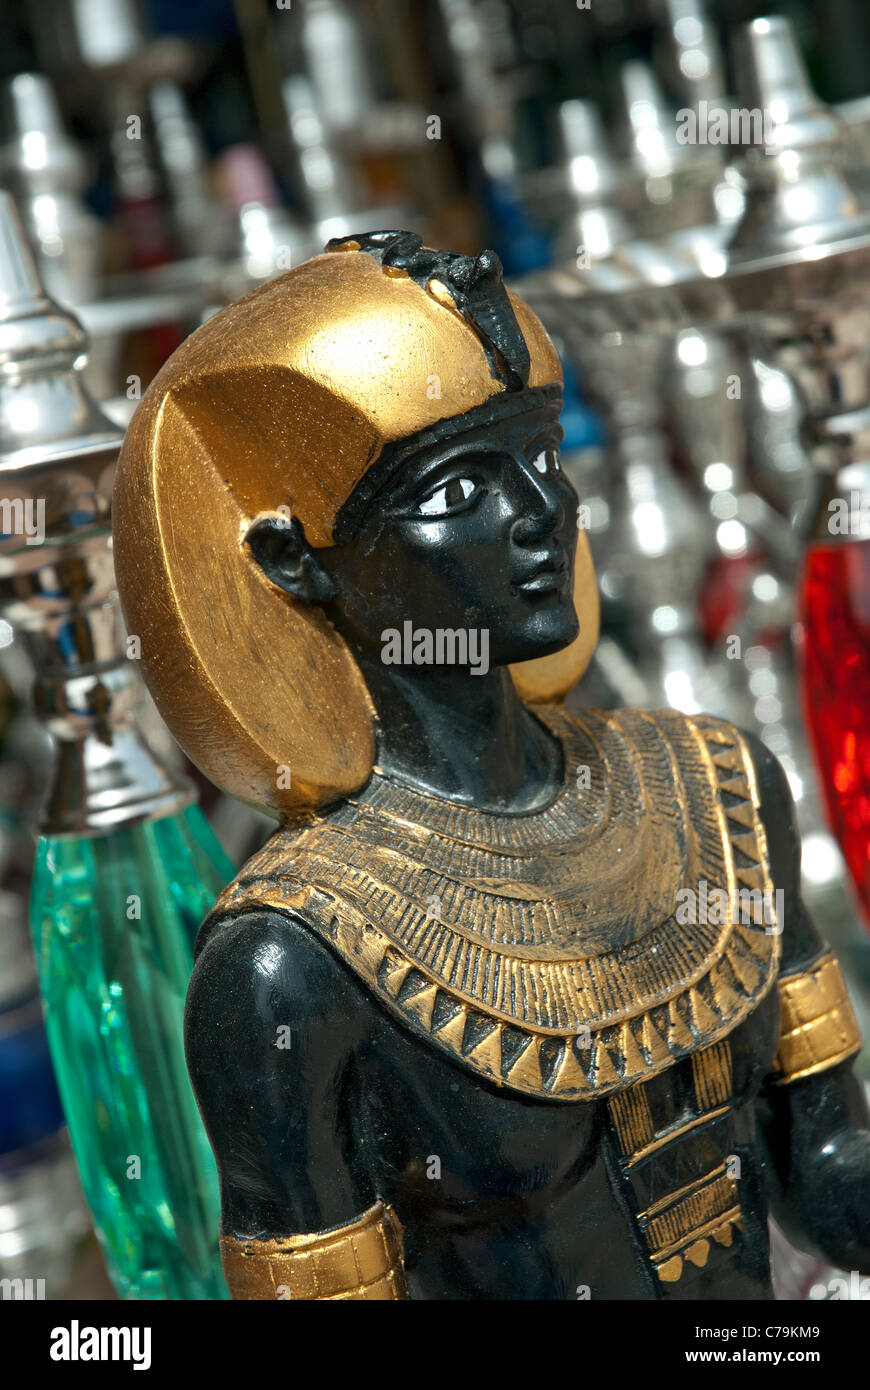 Souvenirs, Dahar Quarter, Hurghada, Red Sea, Egypt Stock Photo